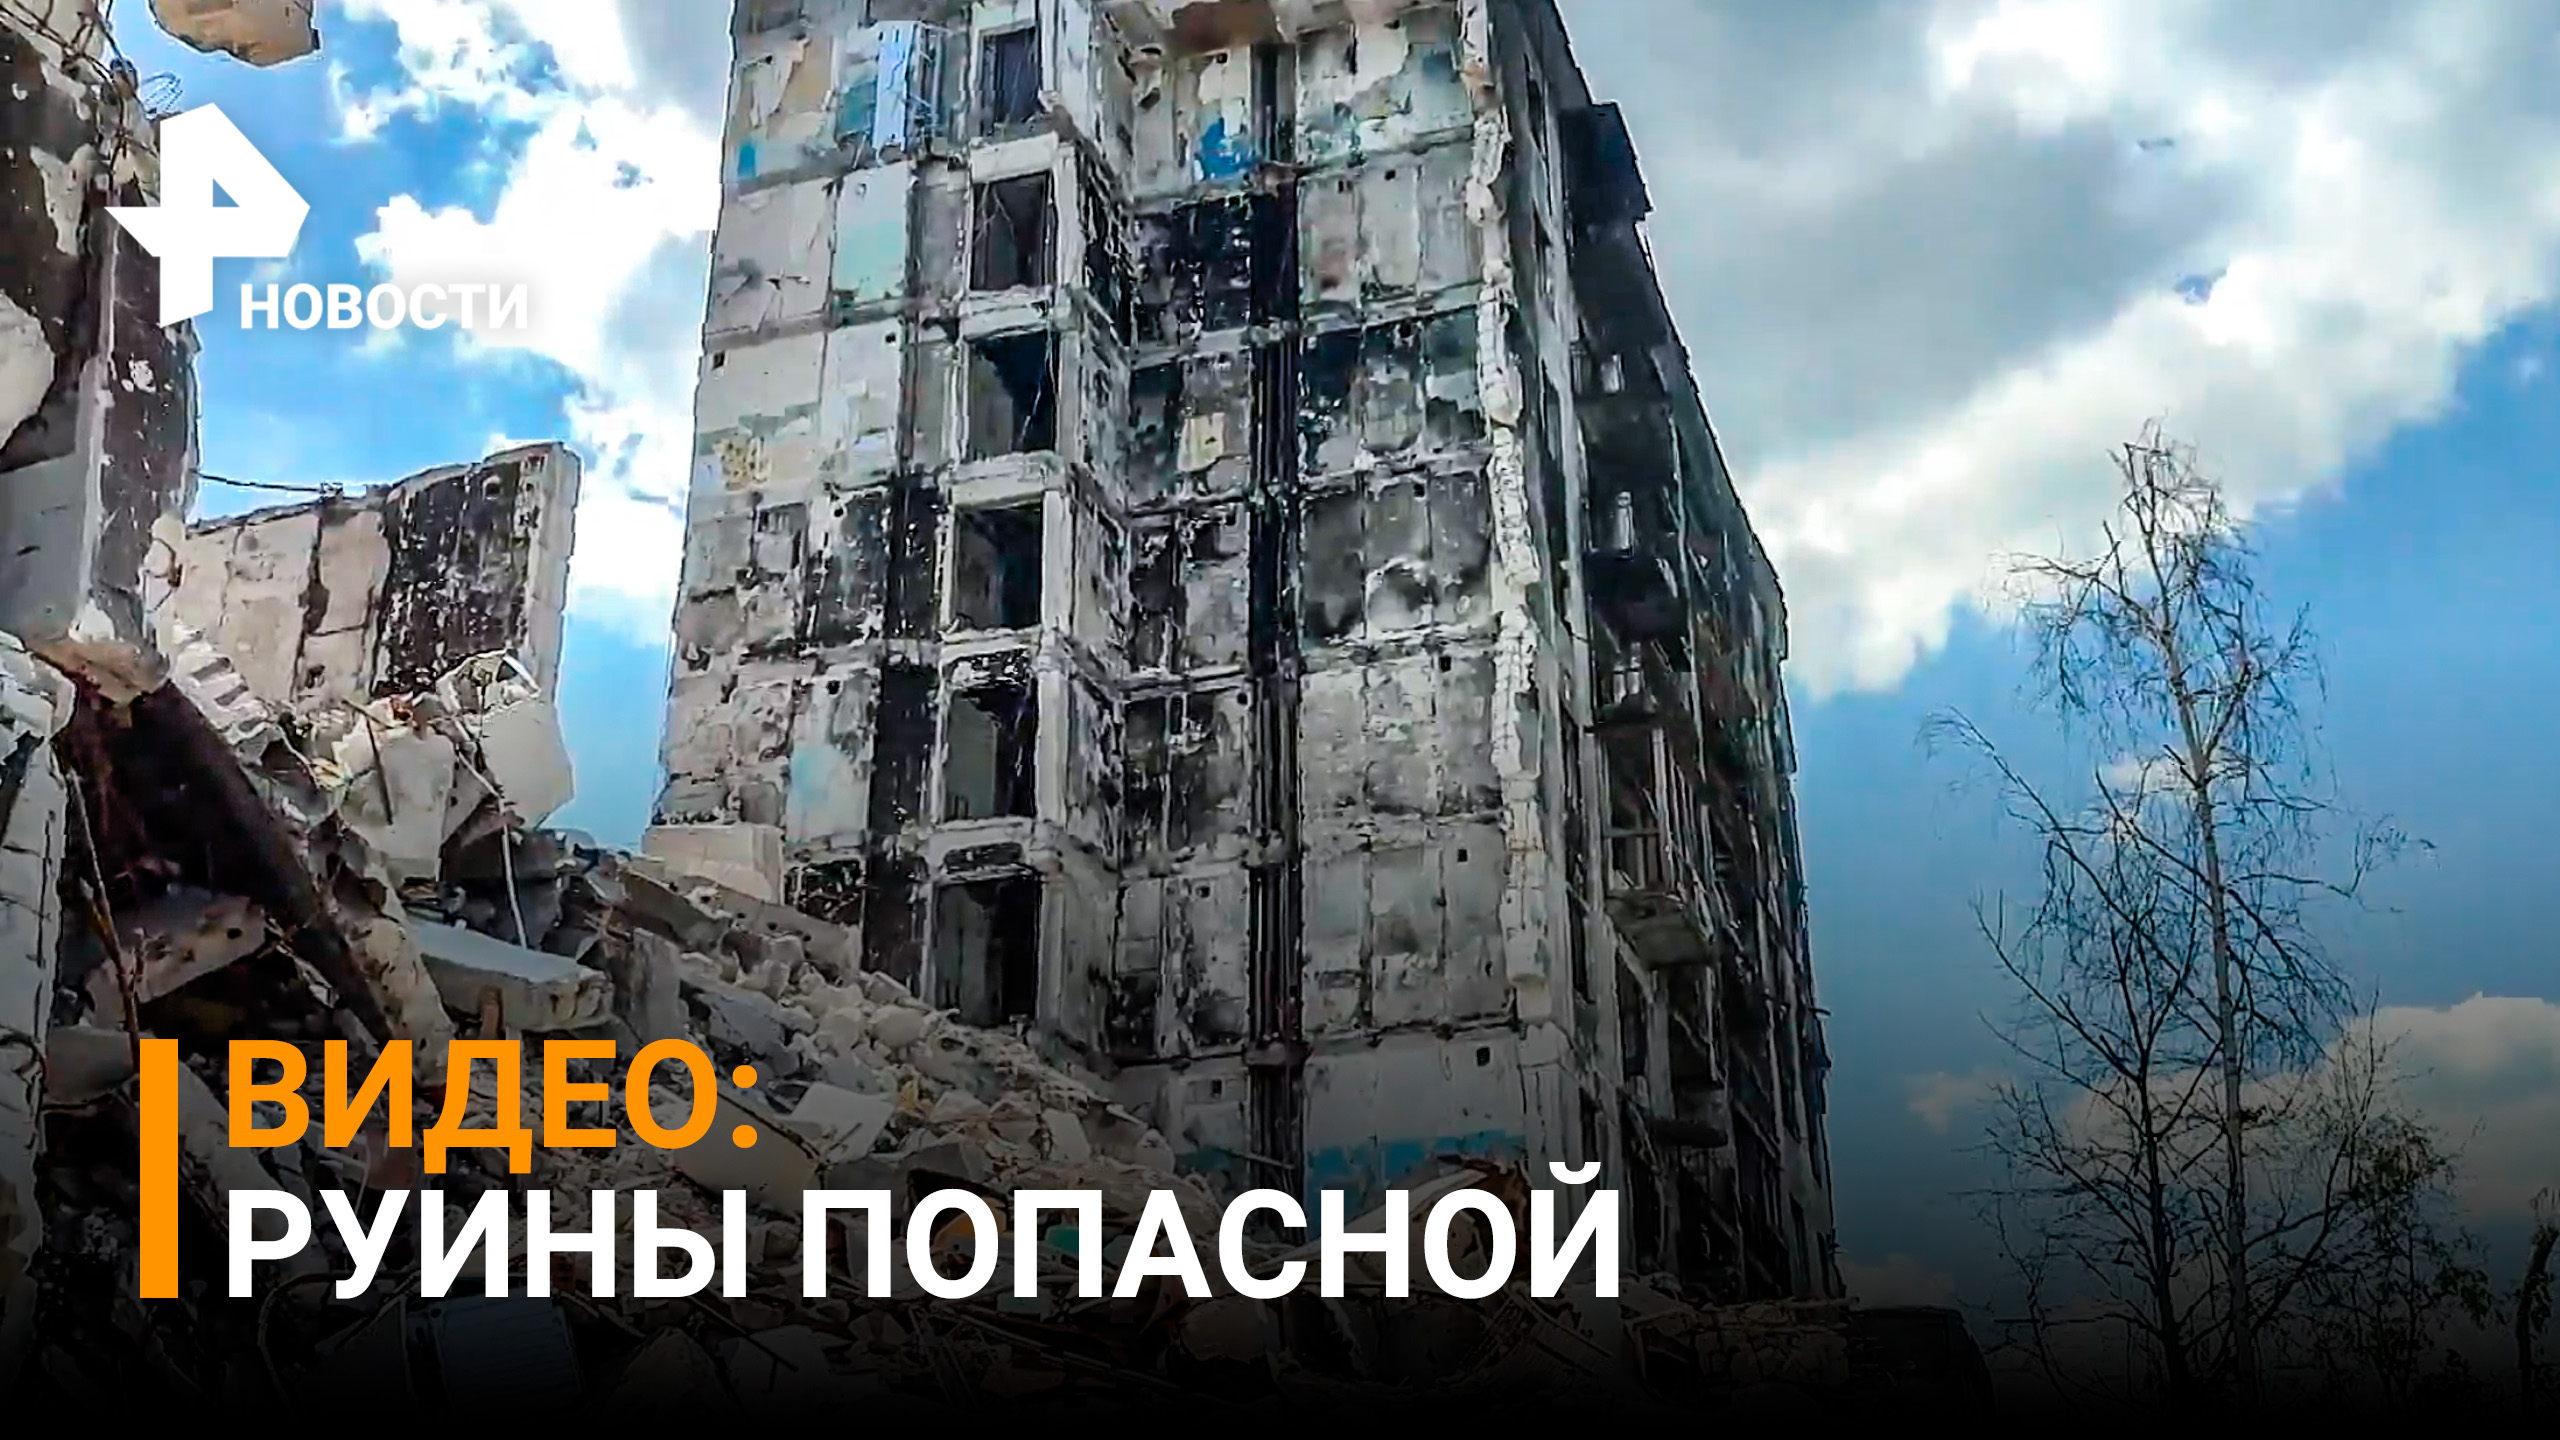 Мариуполь 2.0: последствия боевых действий сняли на видео в городе Попасная / РЕН Новости